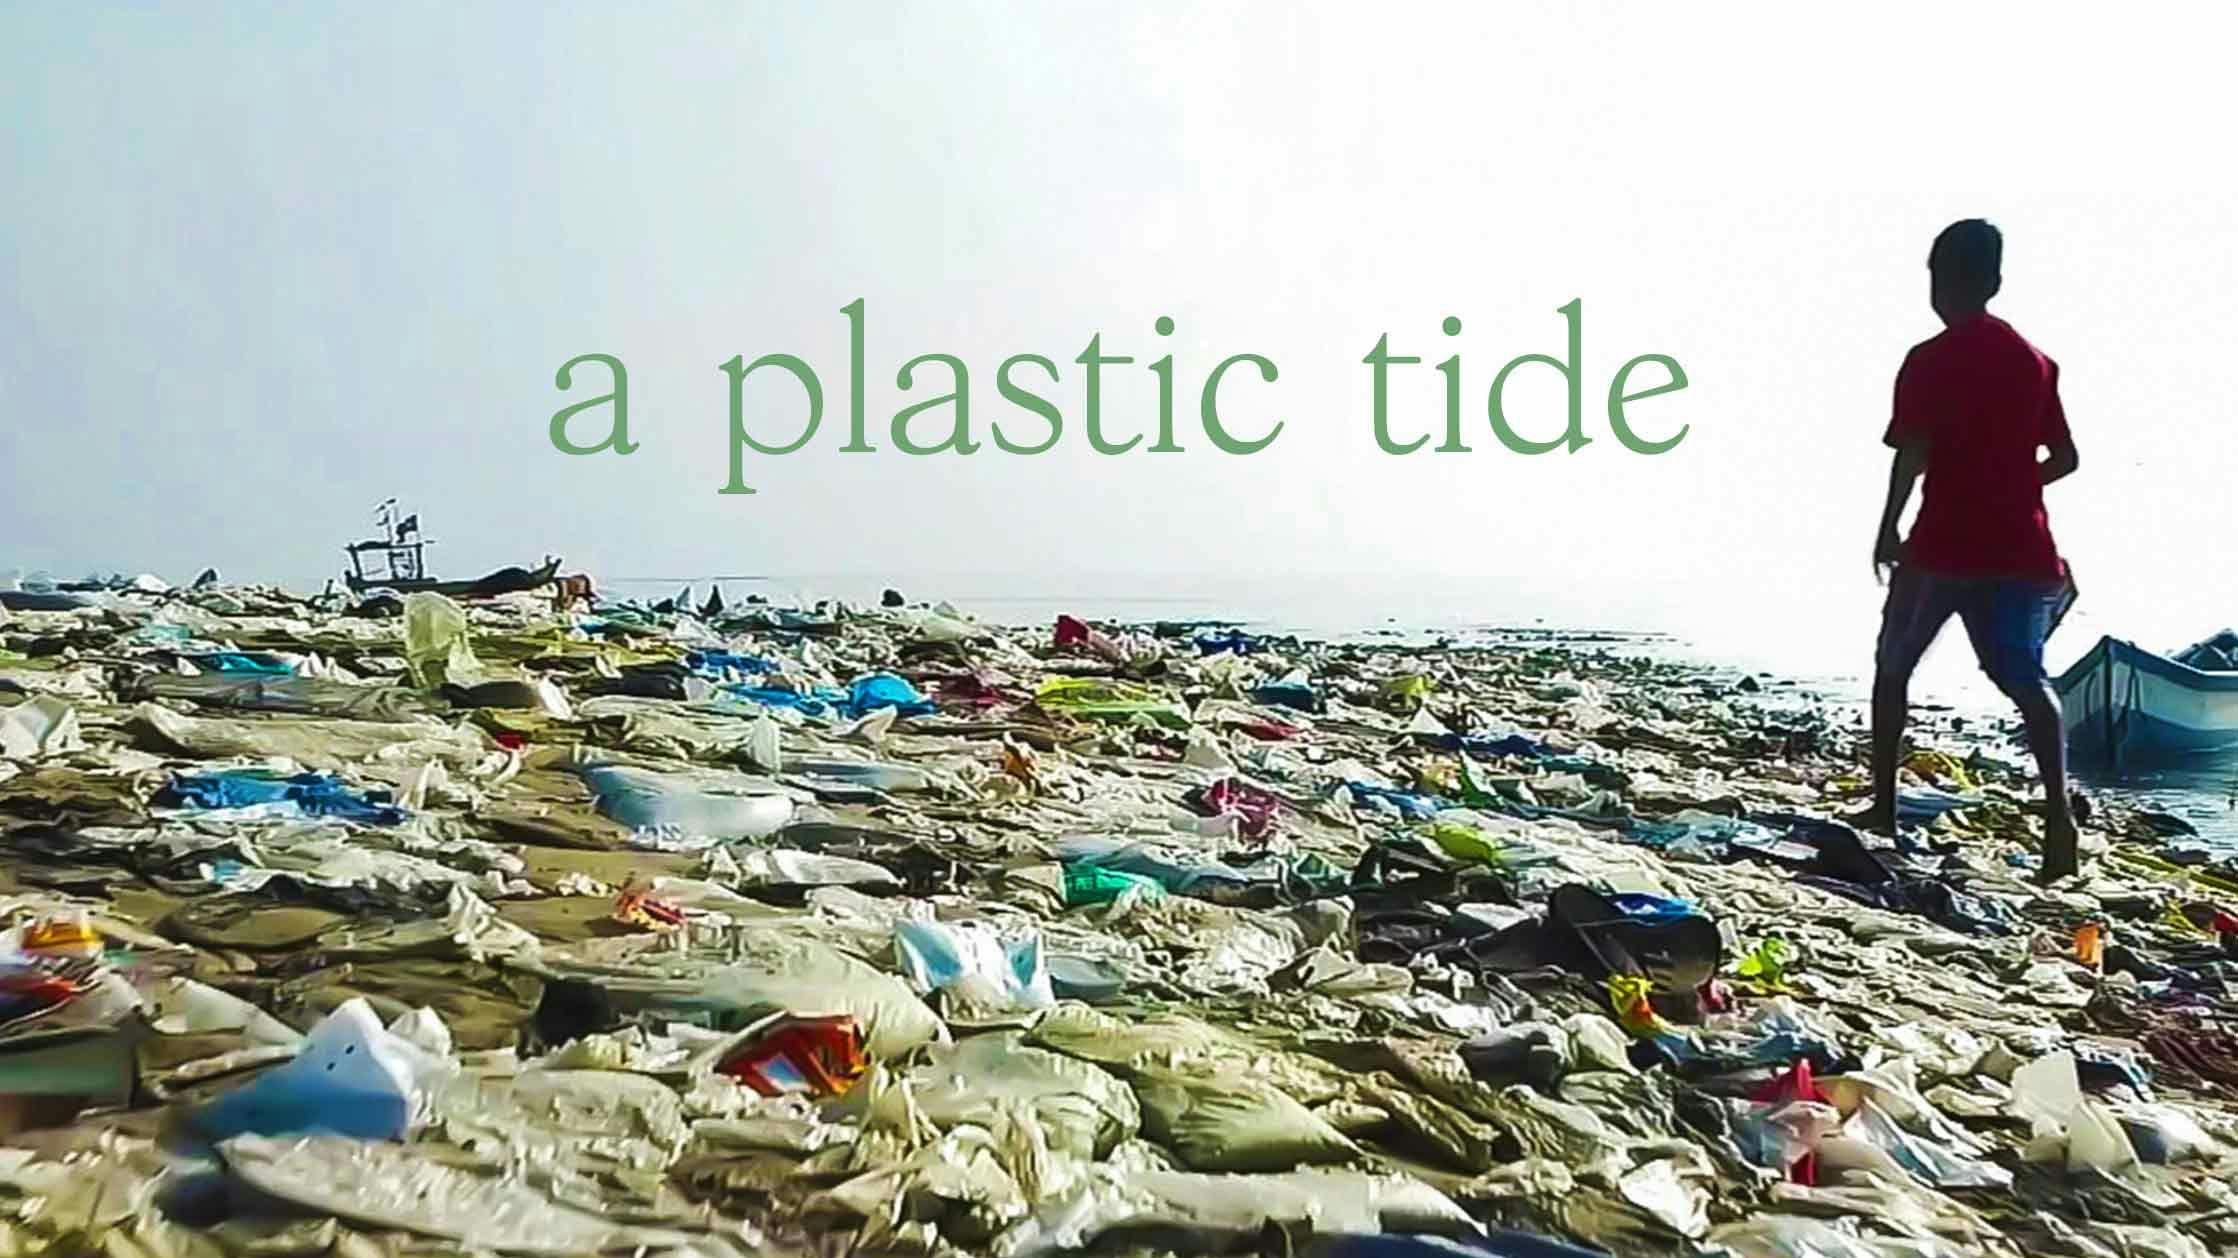 A Plastic Tide